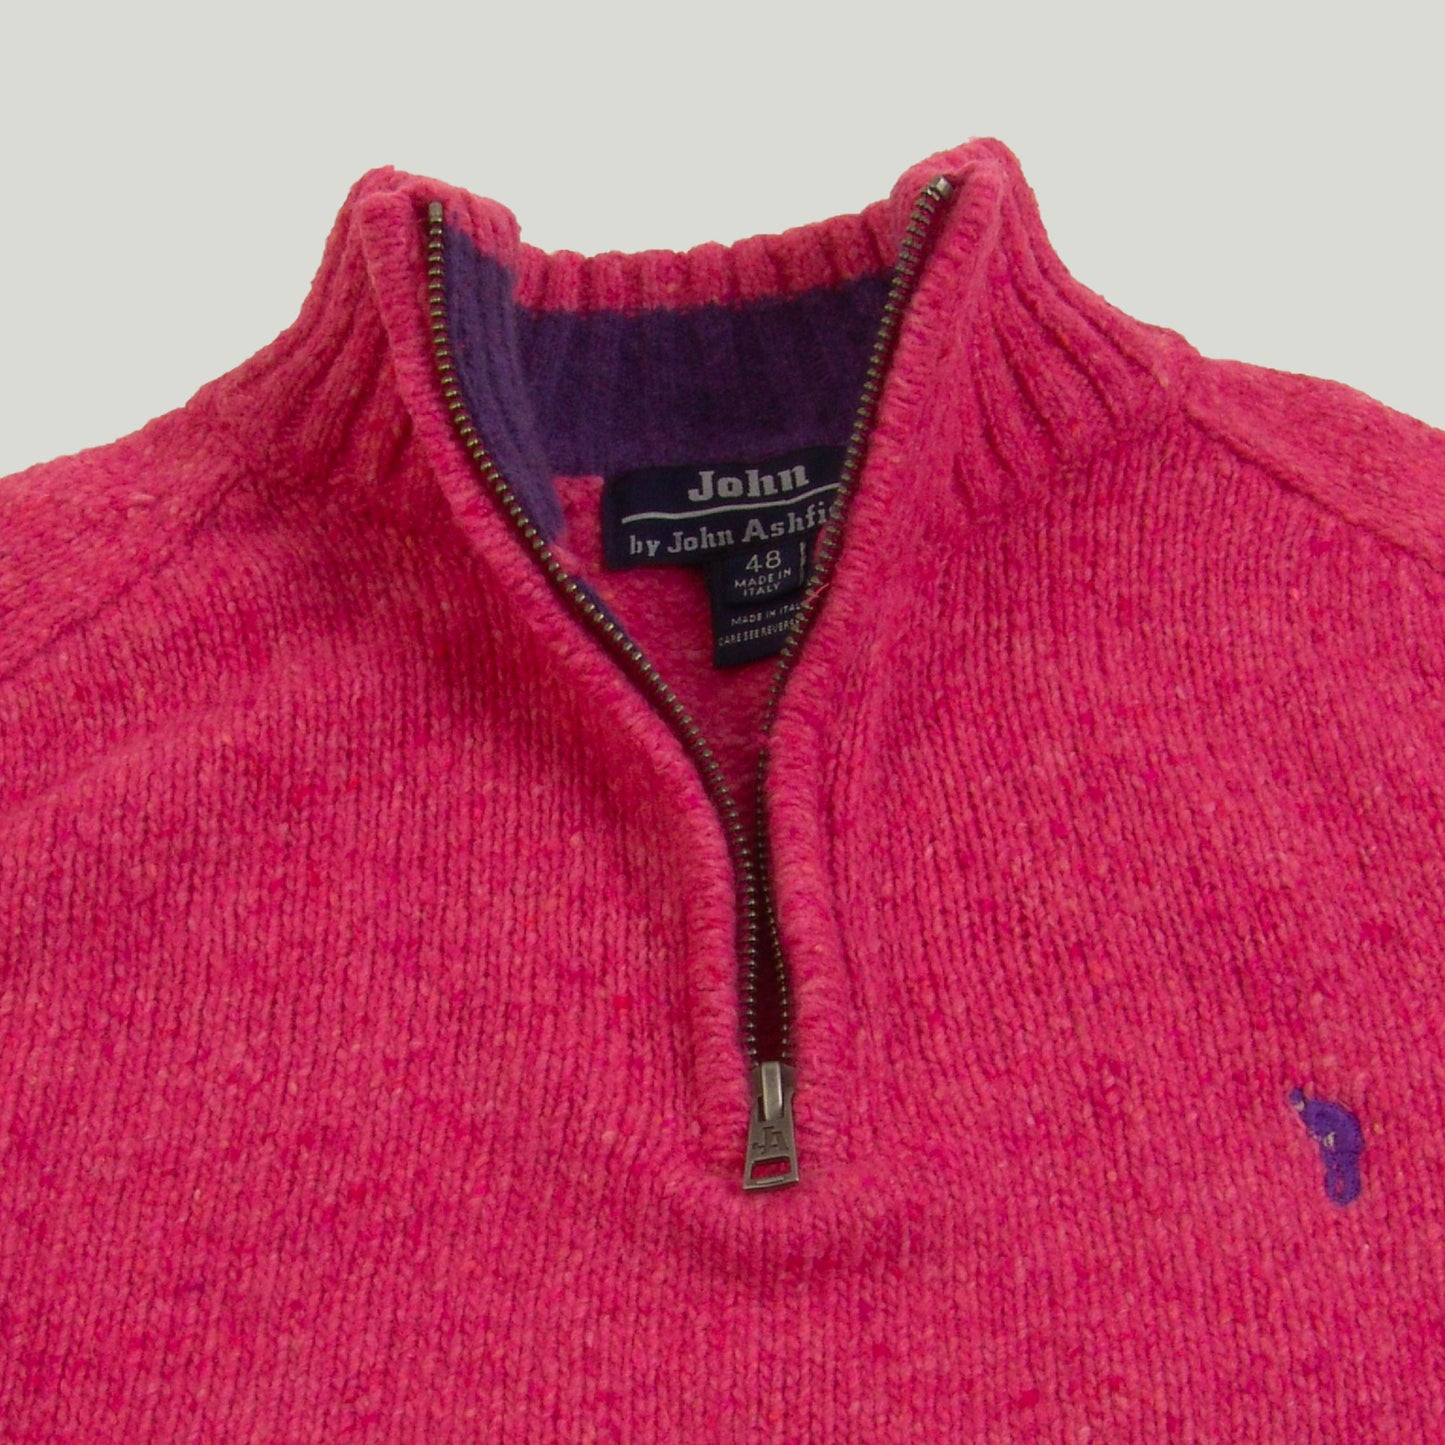 Men's Half-Zipper Sweater